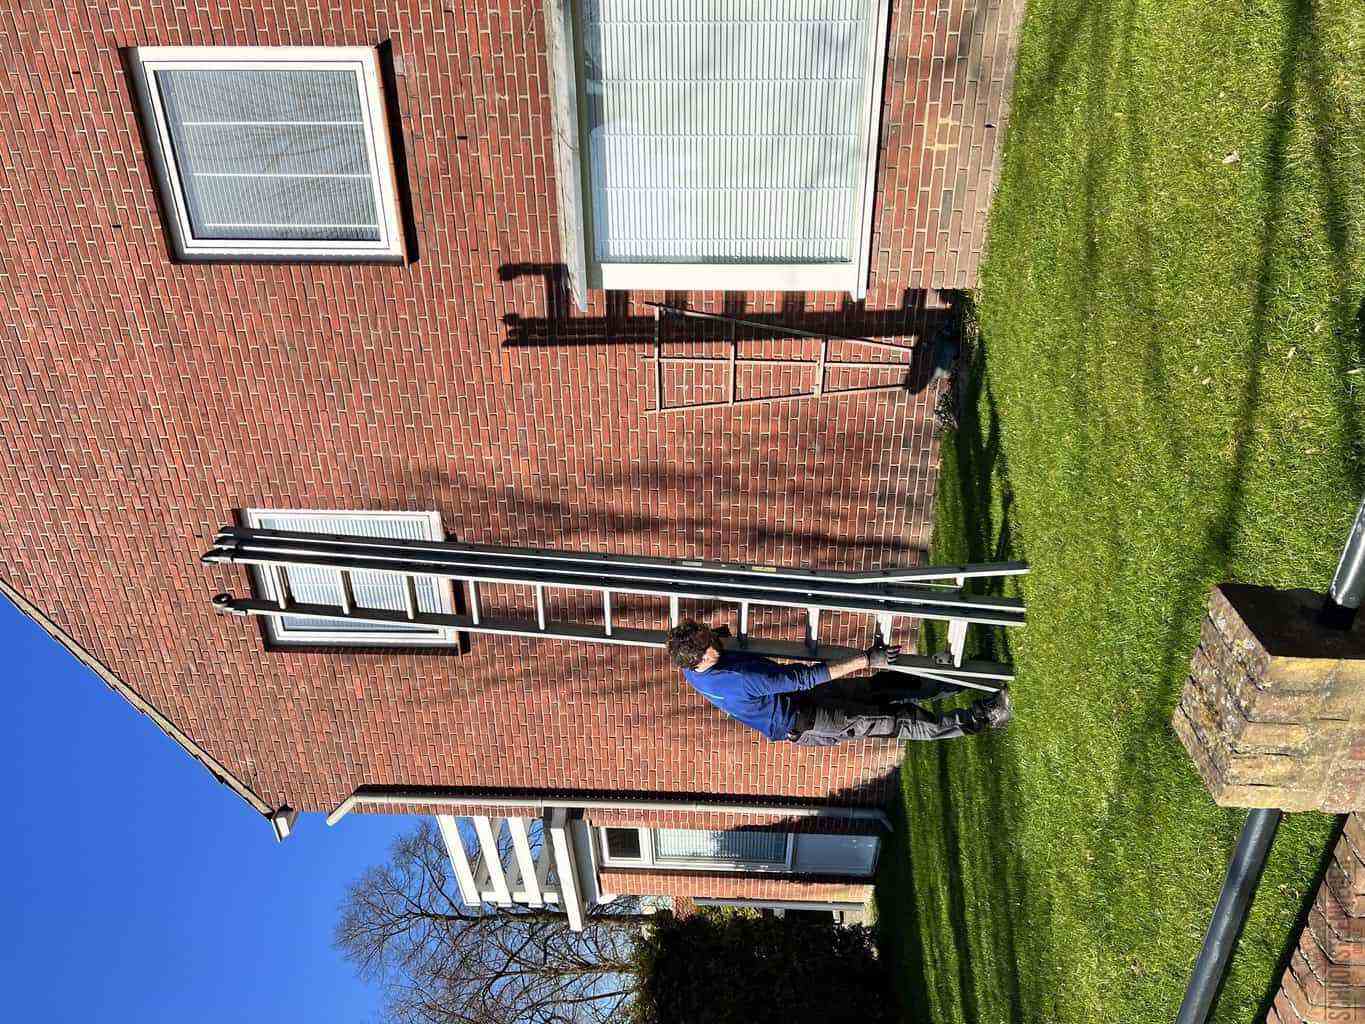 Goirle schoorsteenveger huis ladder